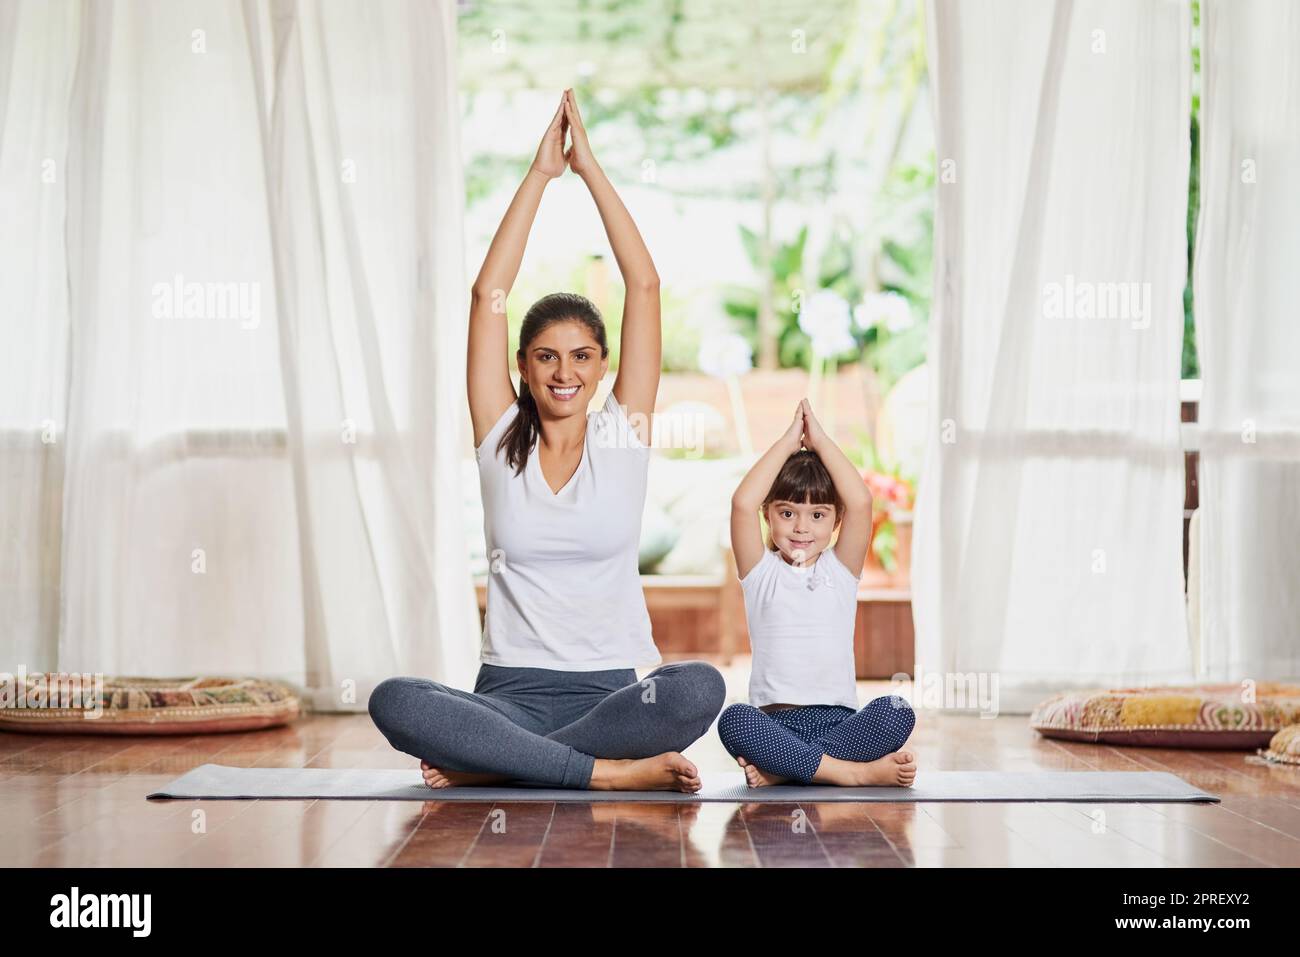 Tutti insieme ora. Ritratto di una giovane madre e figlia focalizzata che fa una posa yoga insieme alle braccia sollevate sopra la testa. Foto Stock